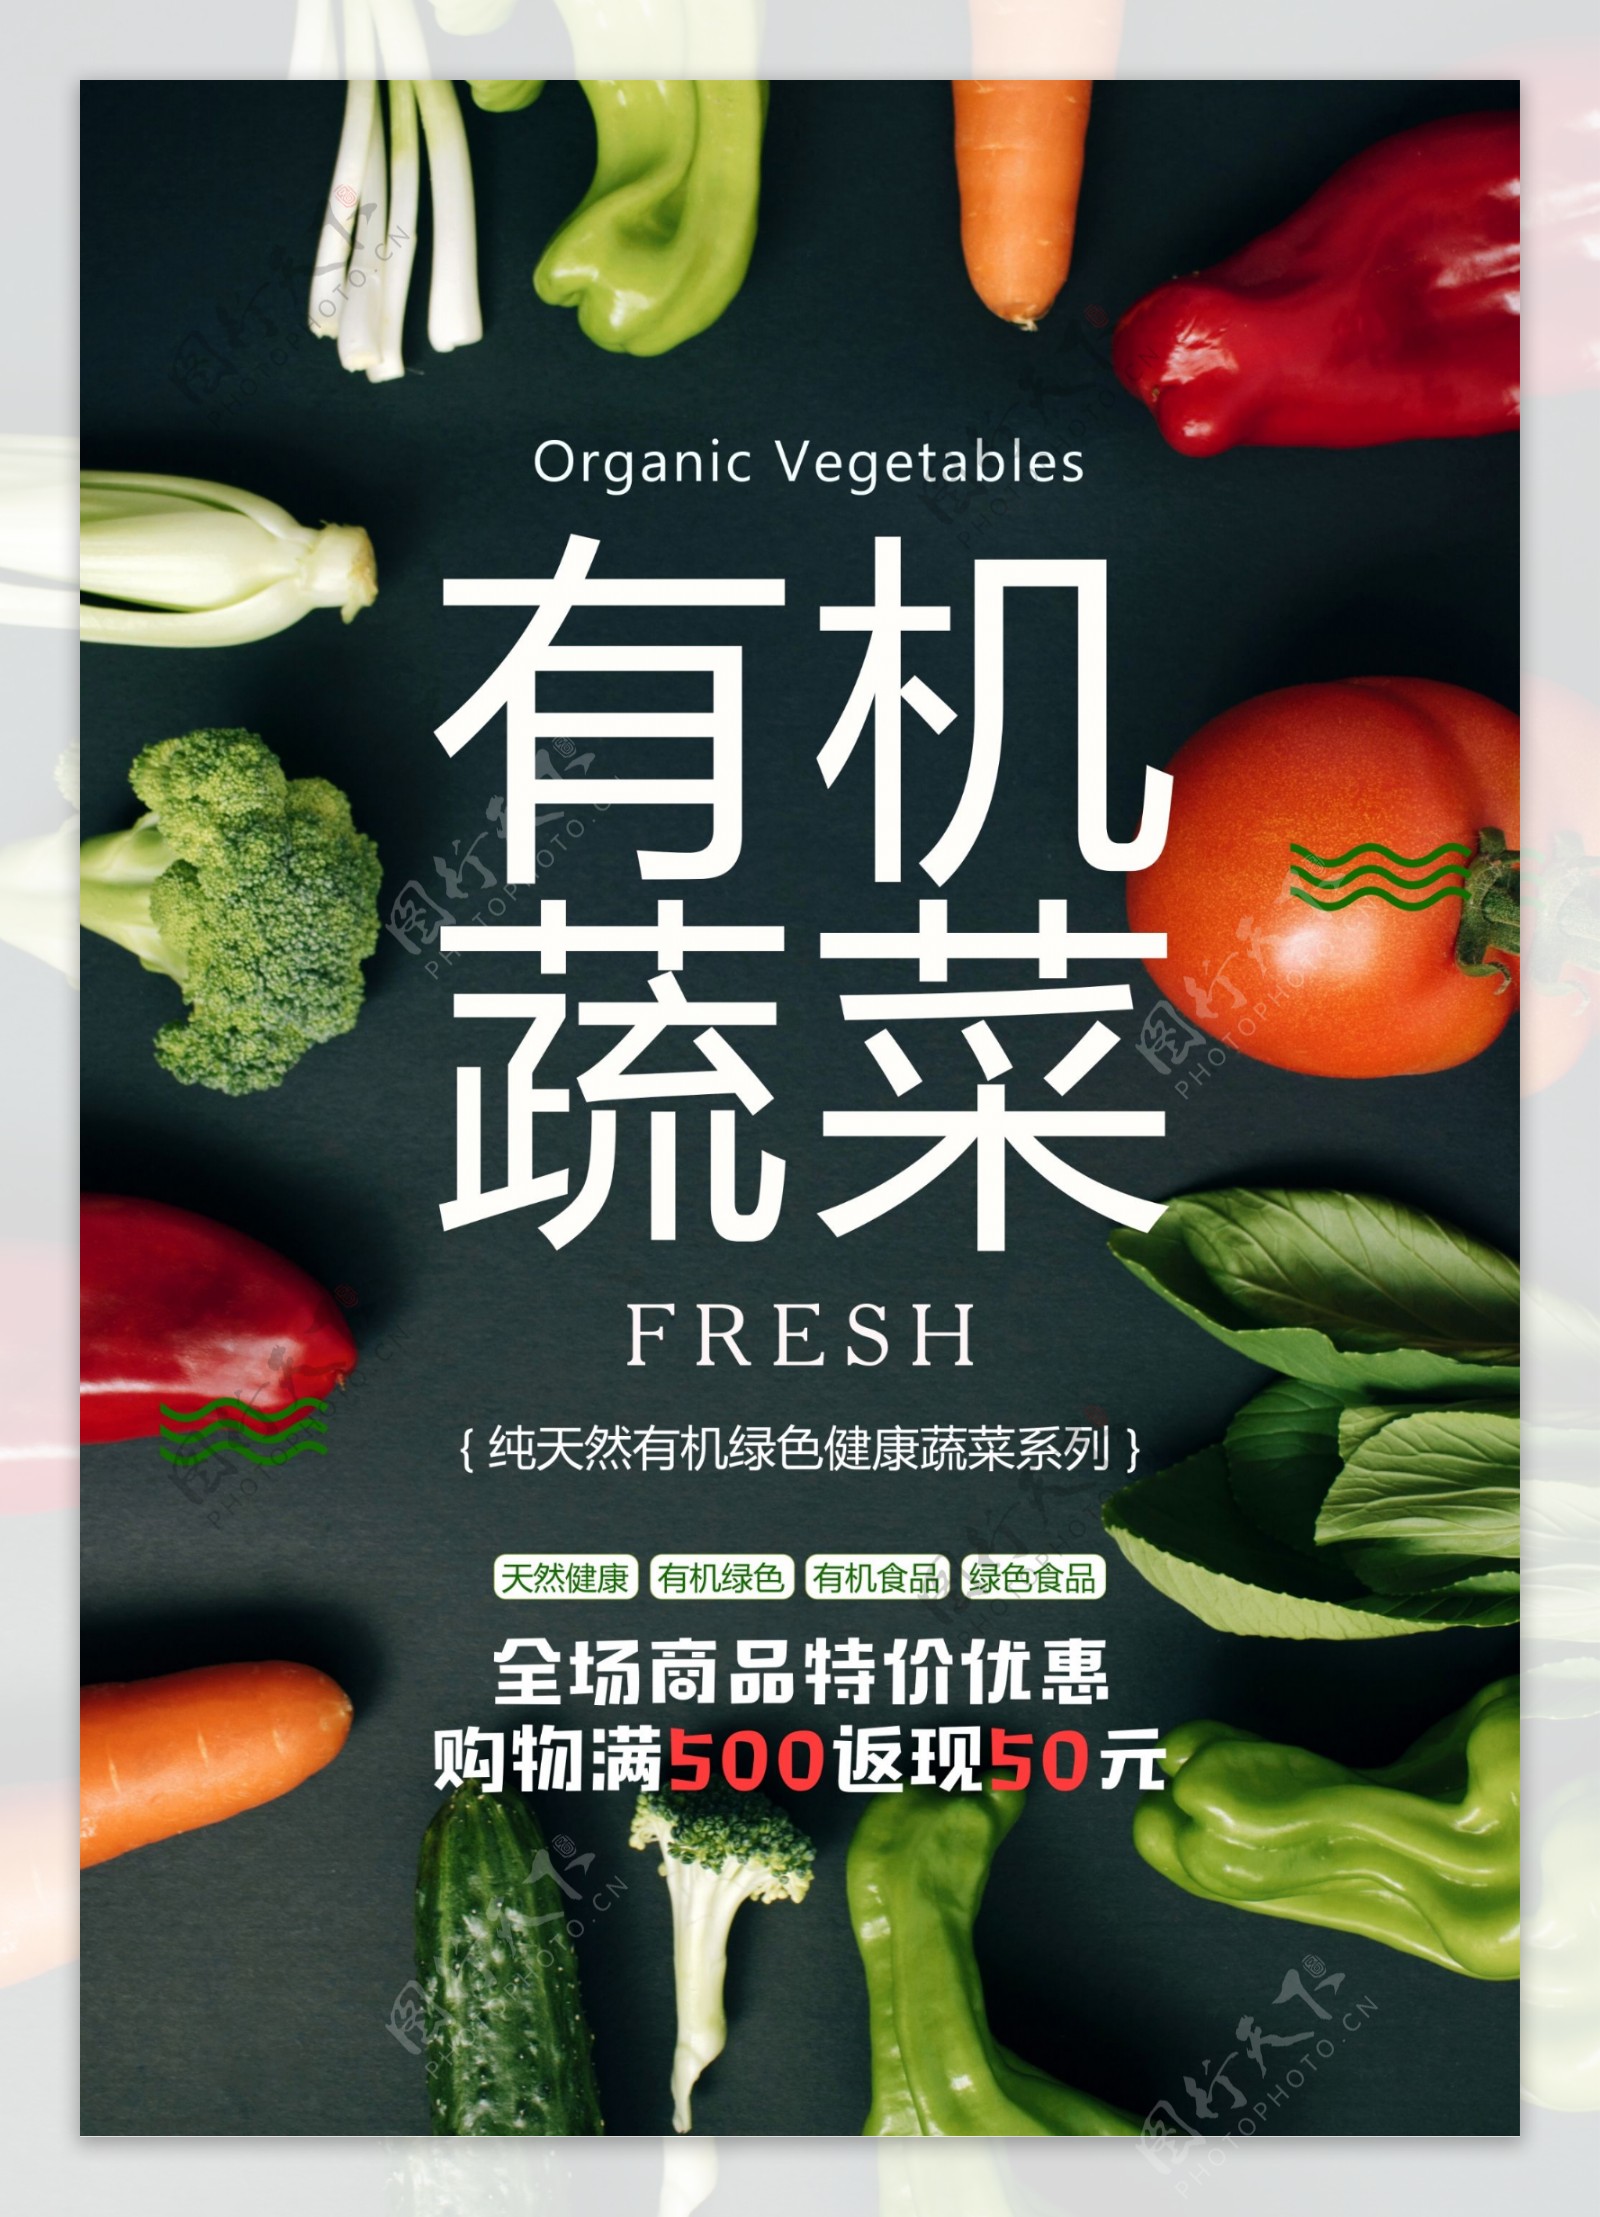 有机蔬菜全场商品特价优惠